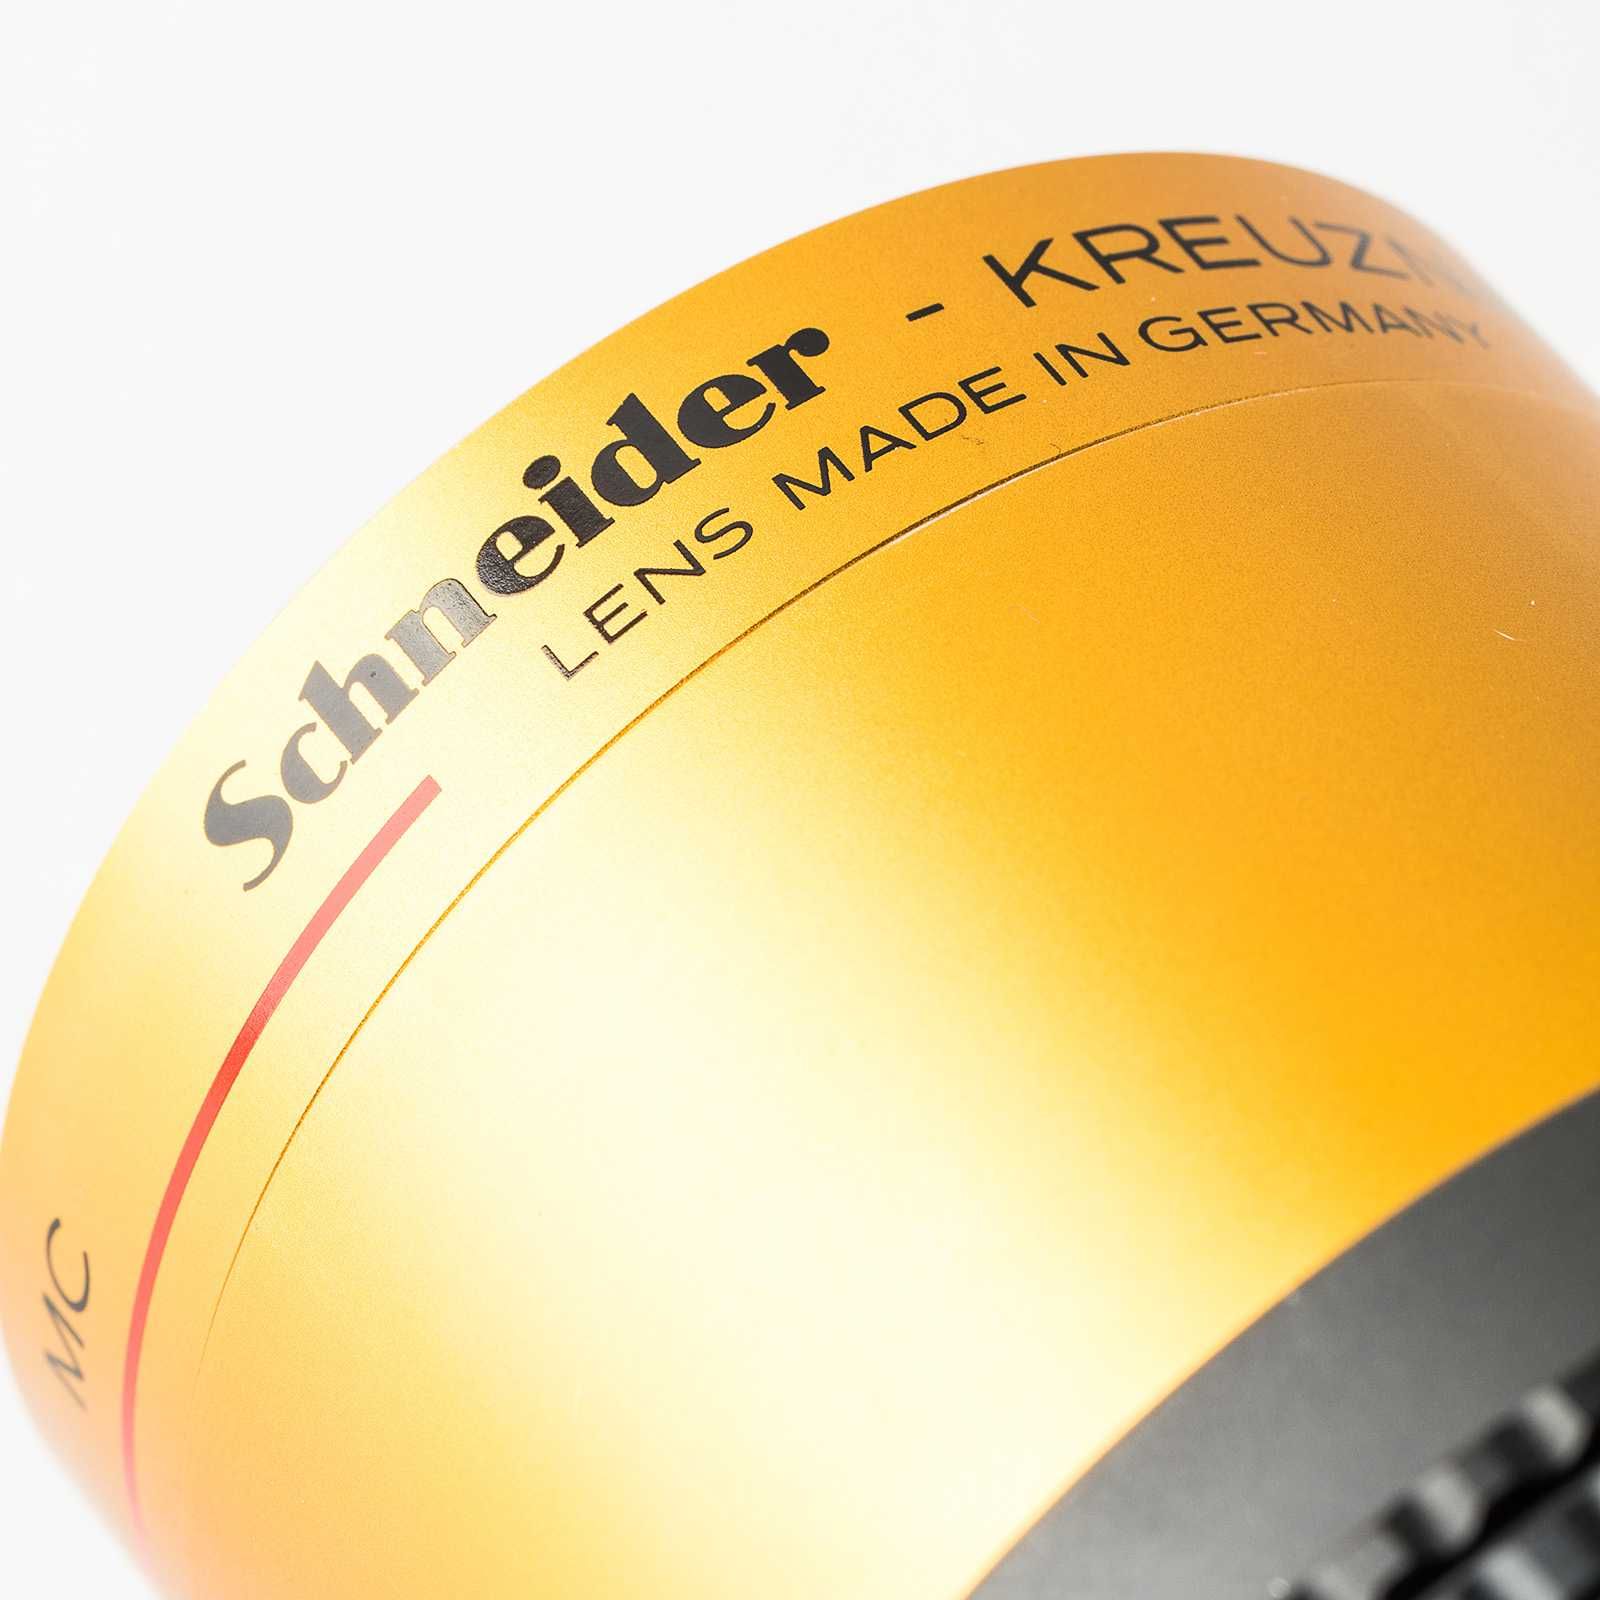 Schneider-Kreuznach Super-Cinelux MC 60mm f/2 m42